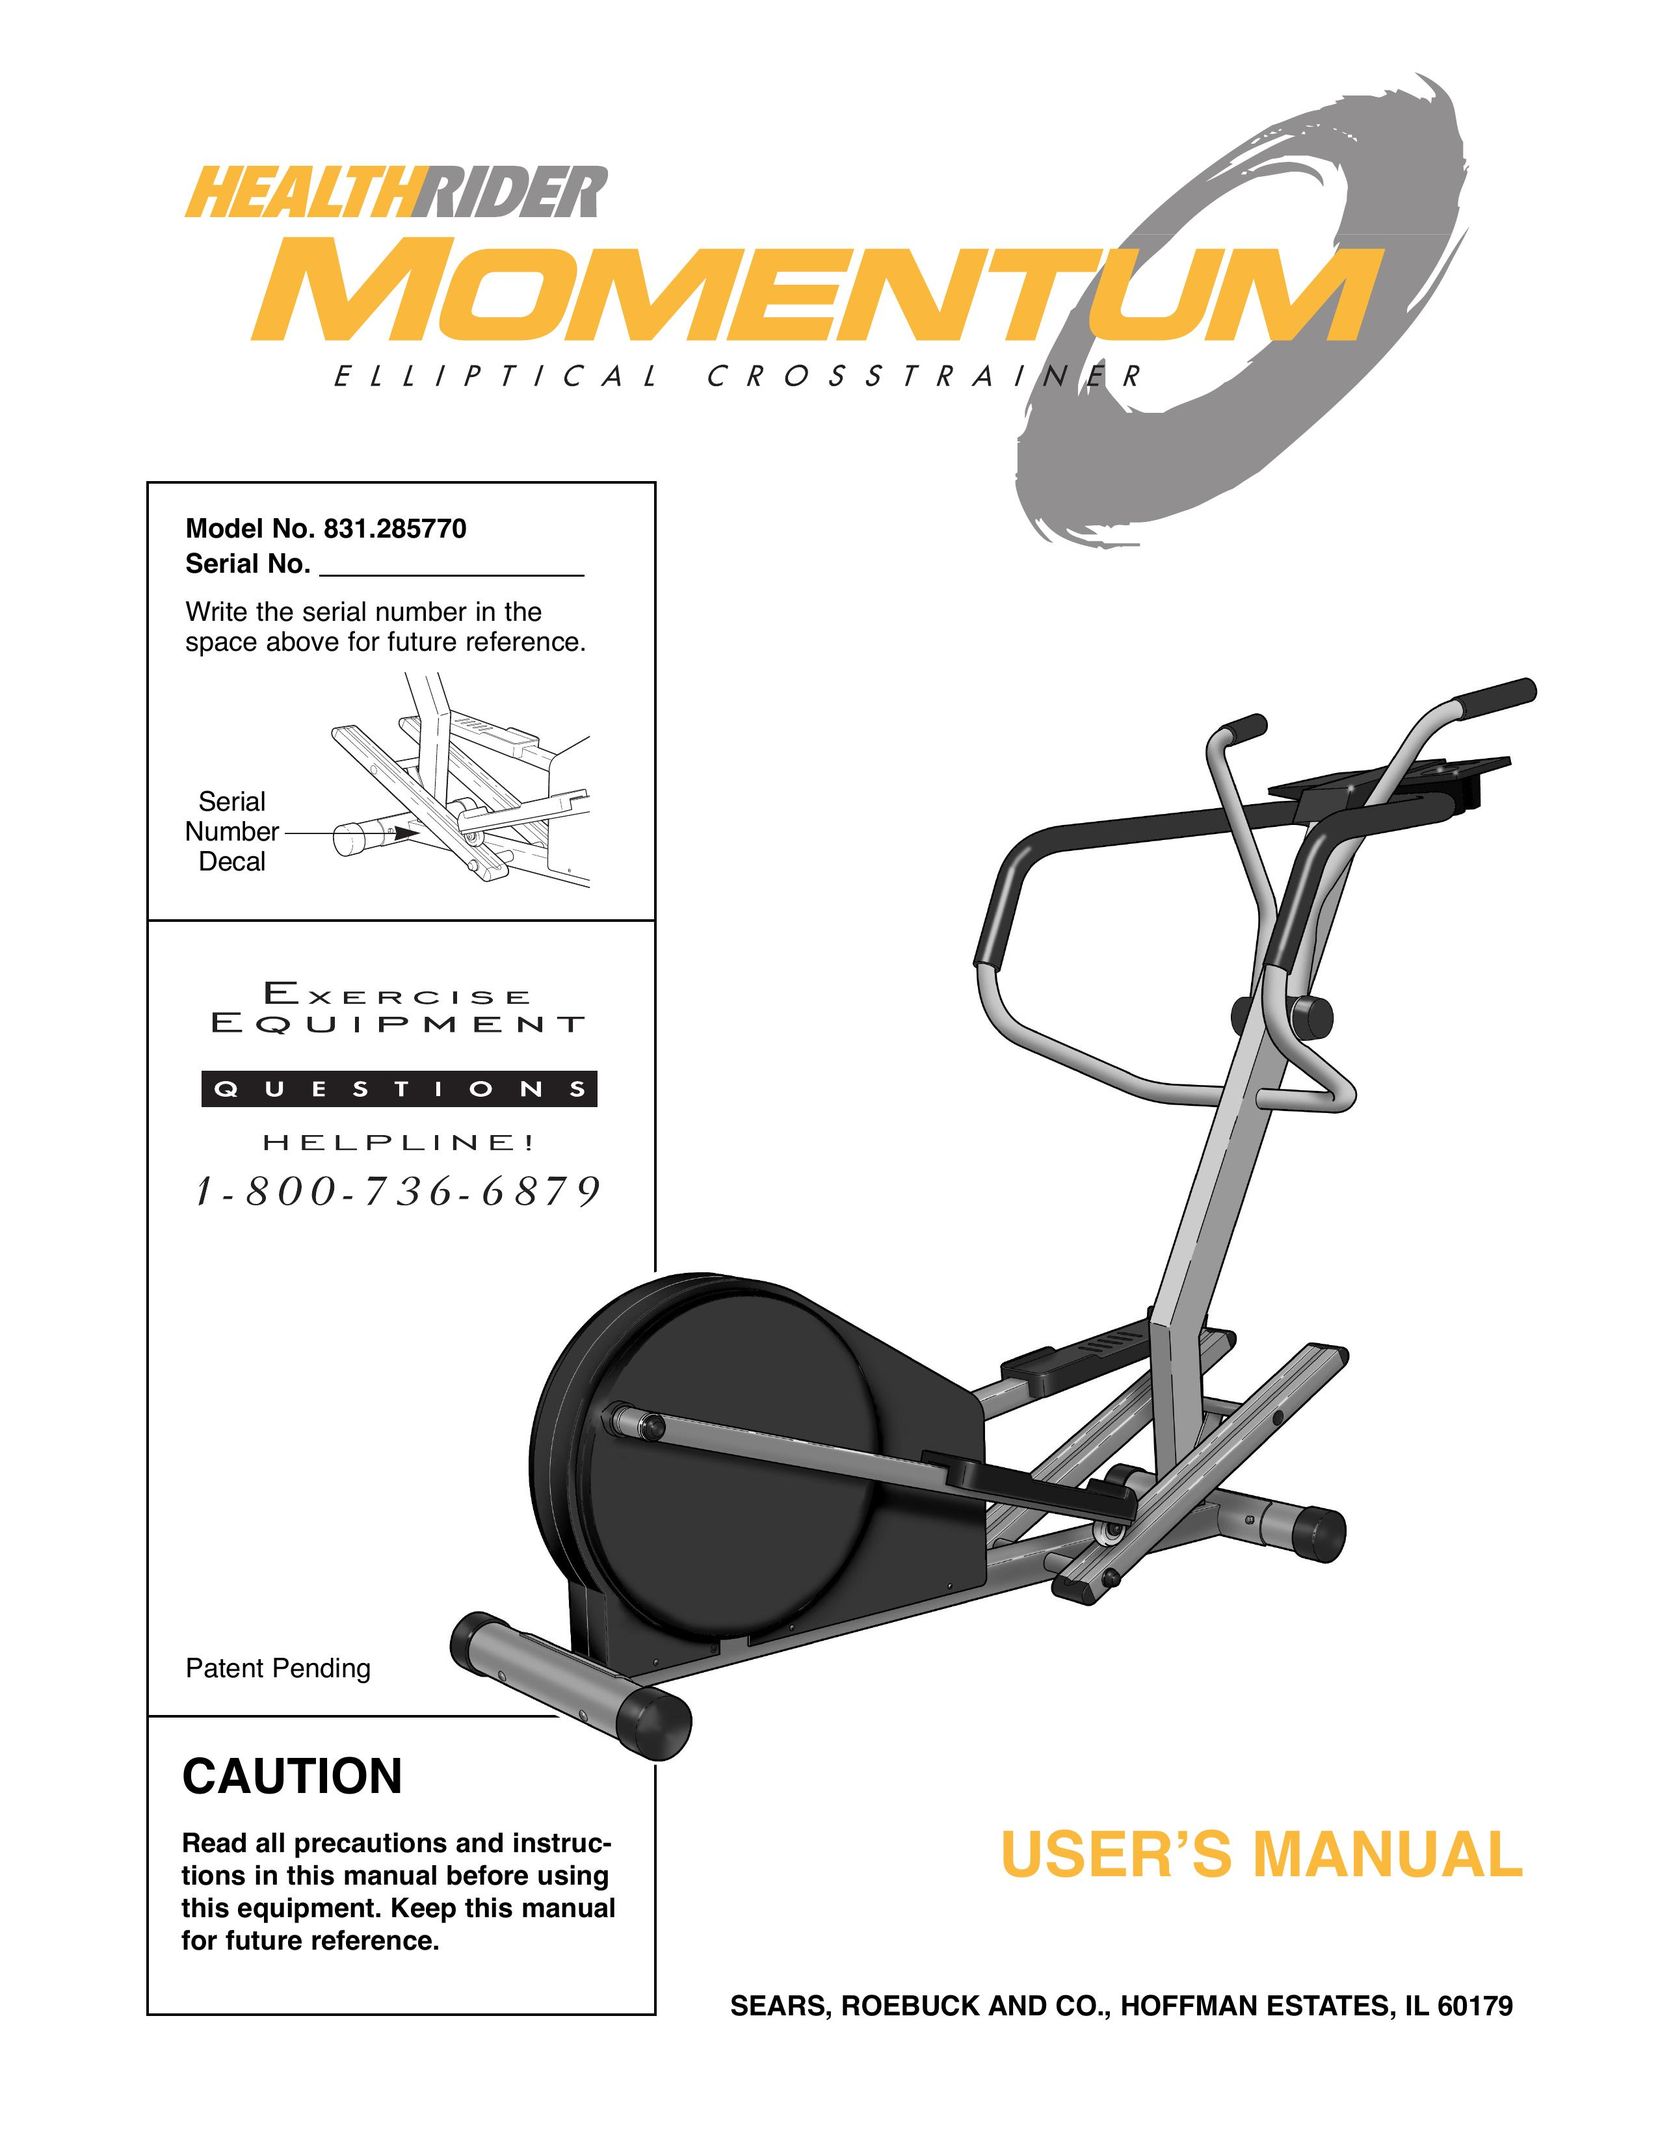 Healthrider 831.285770 Home Gym User Manual